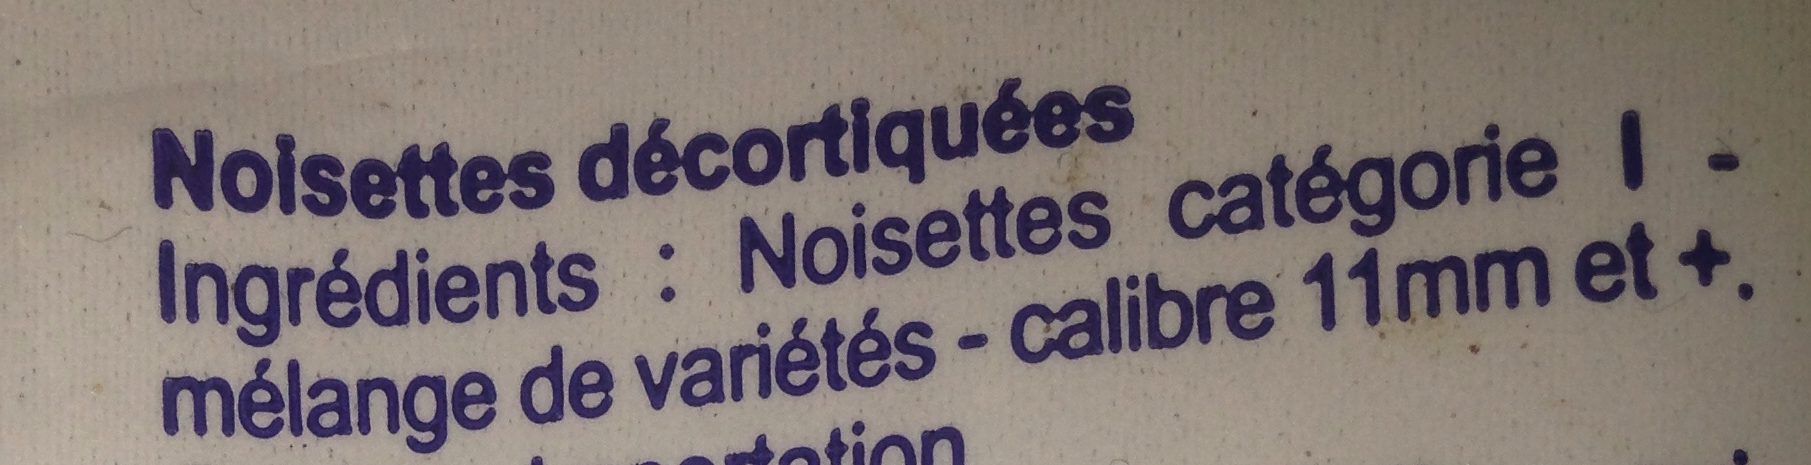 Noisettes Décortiquées - Ingredients - fr